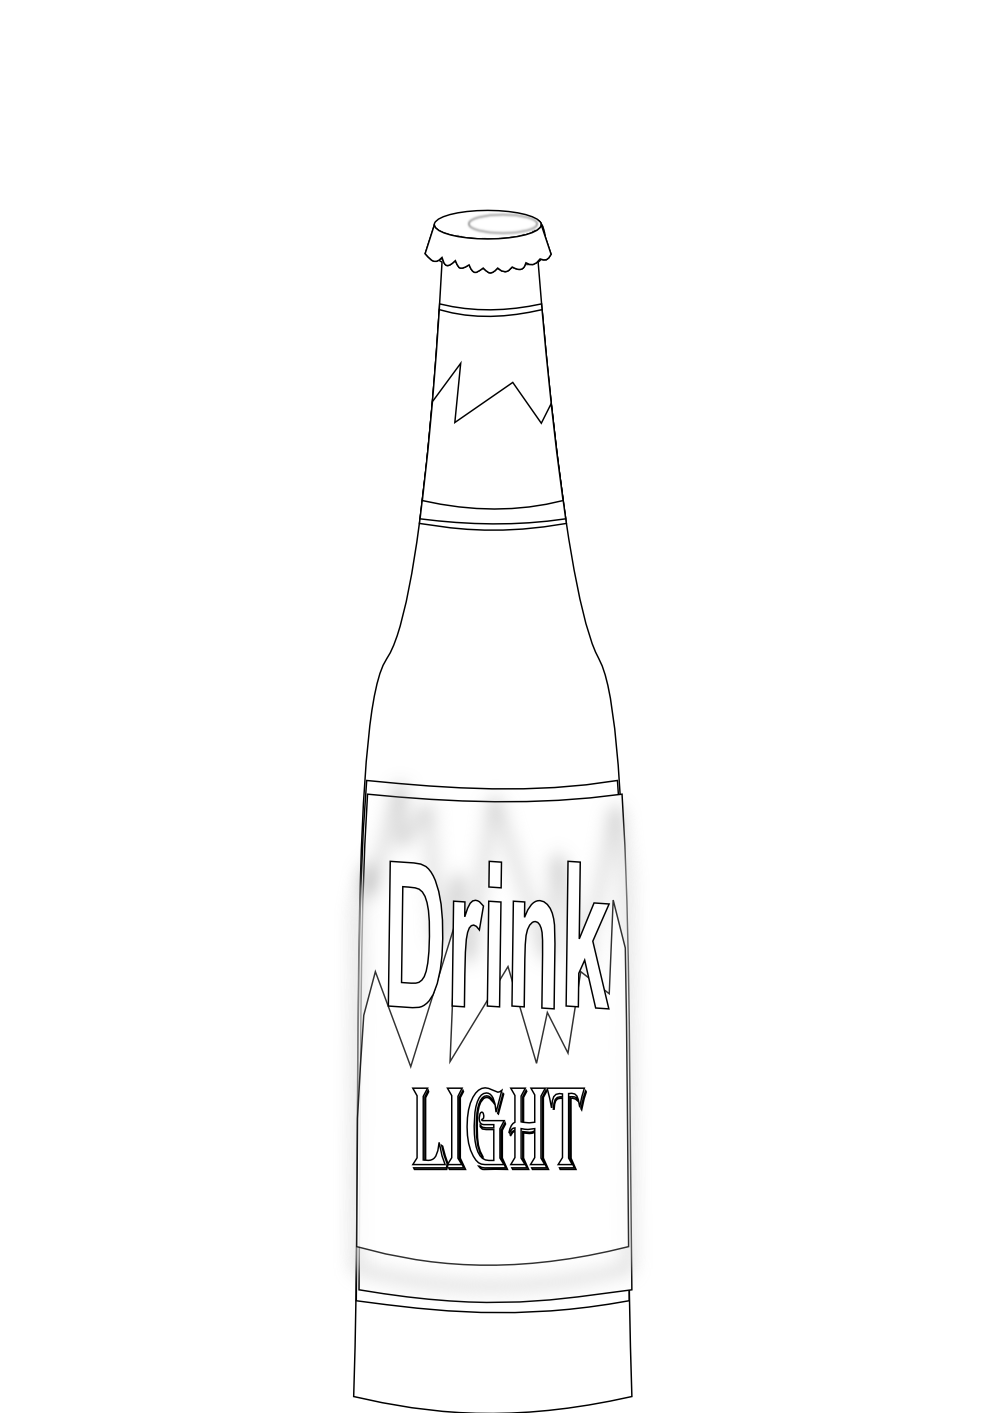 Beer Bottle Black White Line Art Coloring Book Colouring September